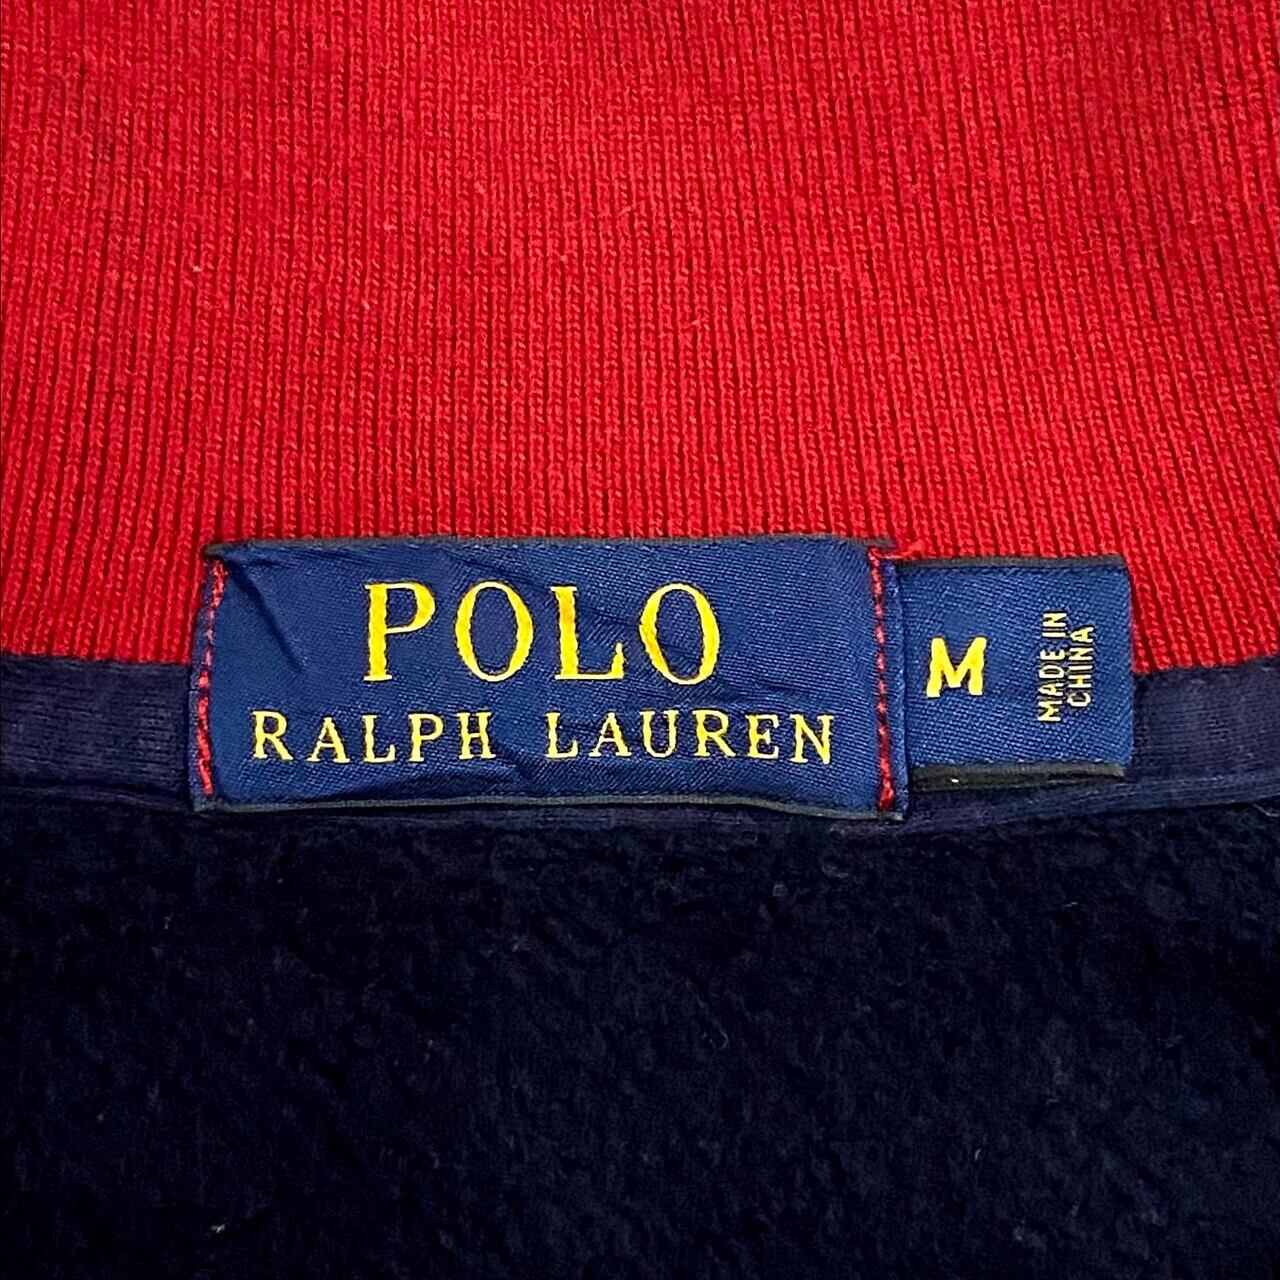 Polo Ralph Lauren ポロ ラルフローレン フロント ワッペン ロゴ 袖